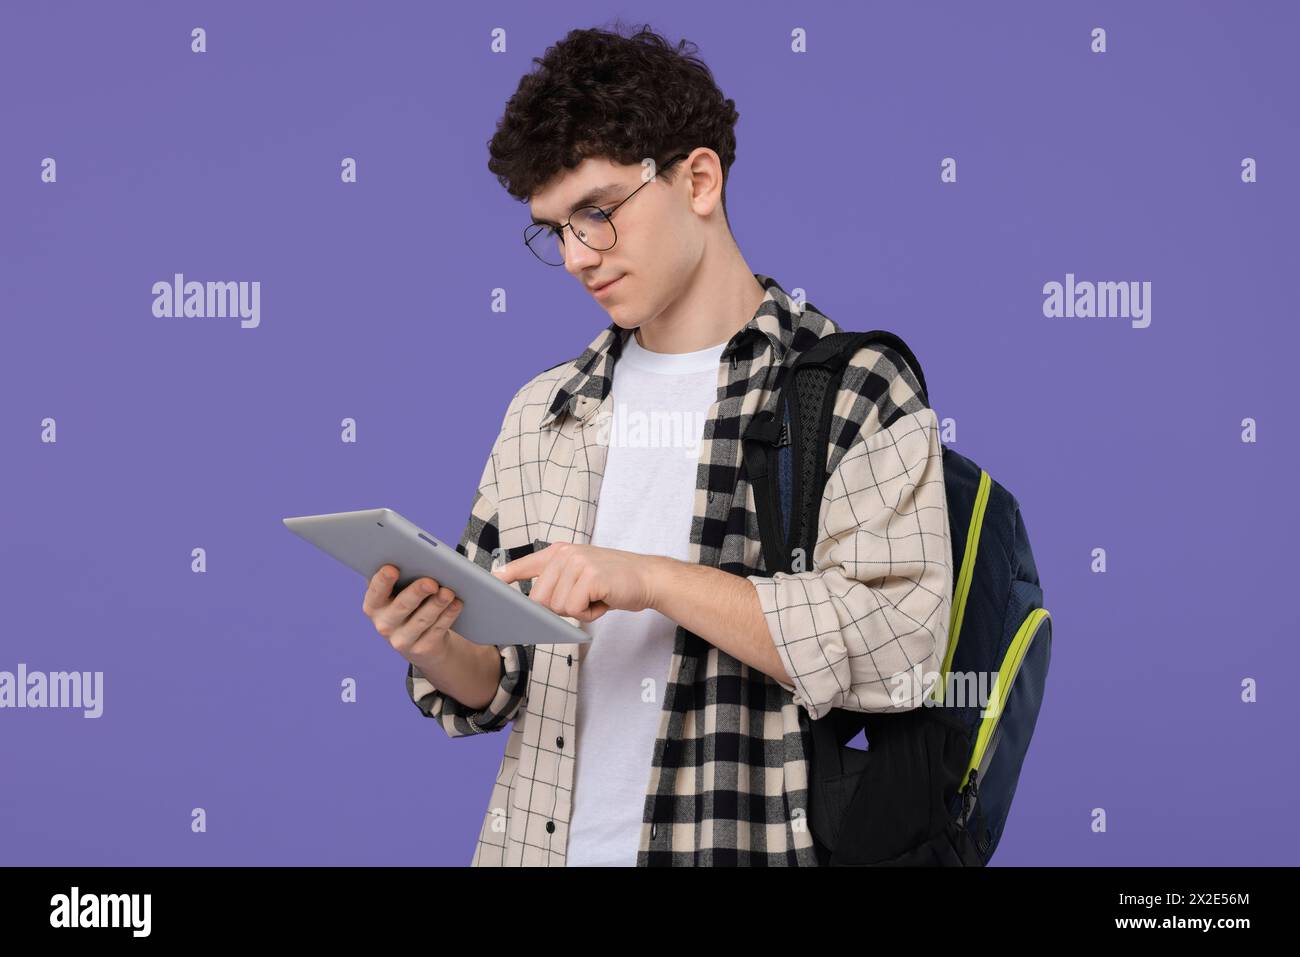 Porträt des Schülers mit Rucksack und Tablet auf violettem Hintergrund Stockfoto